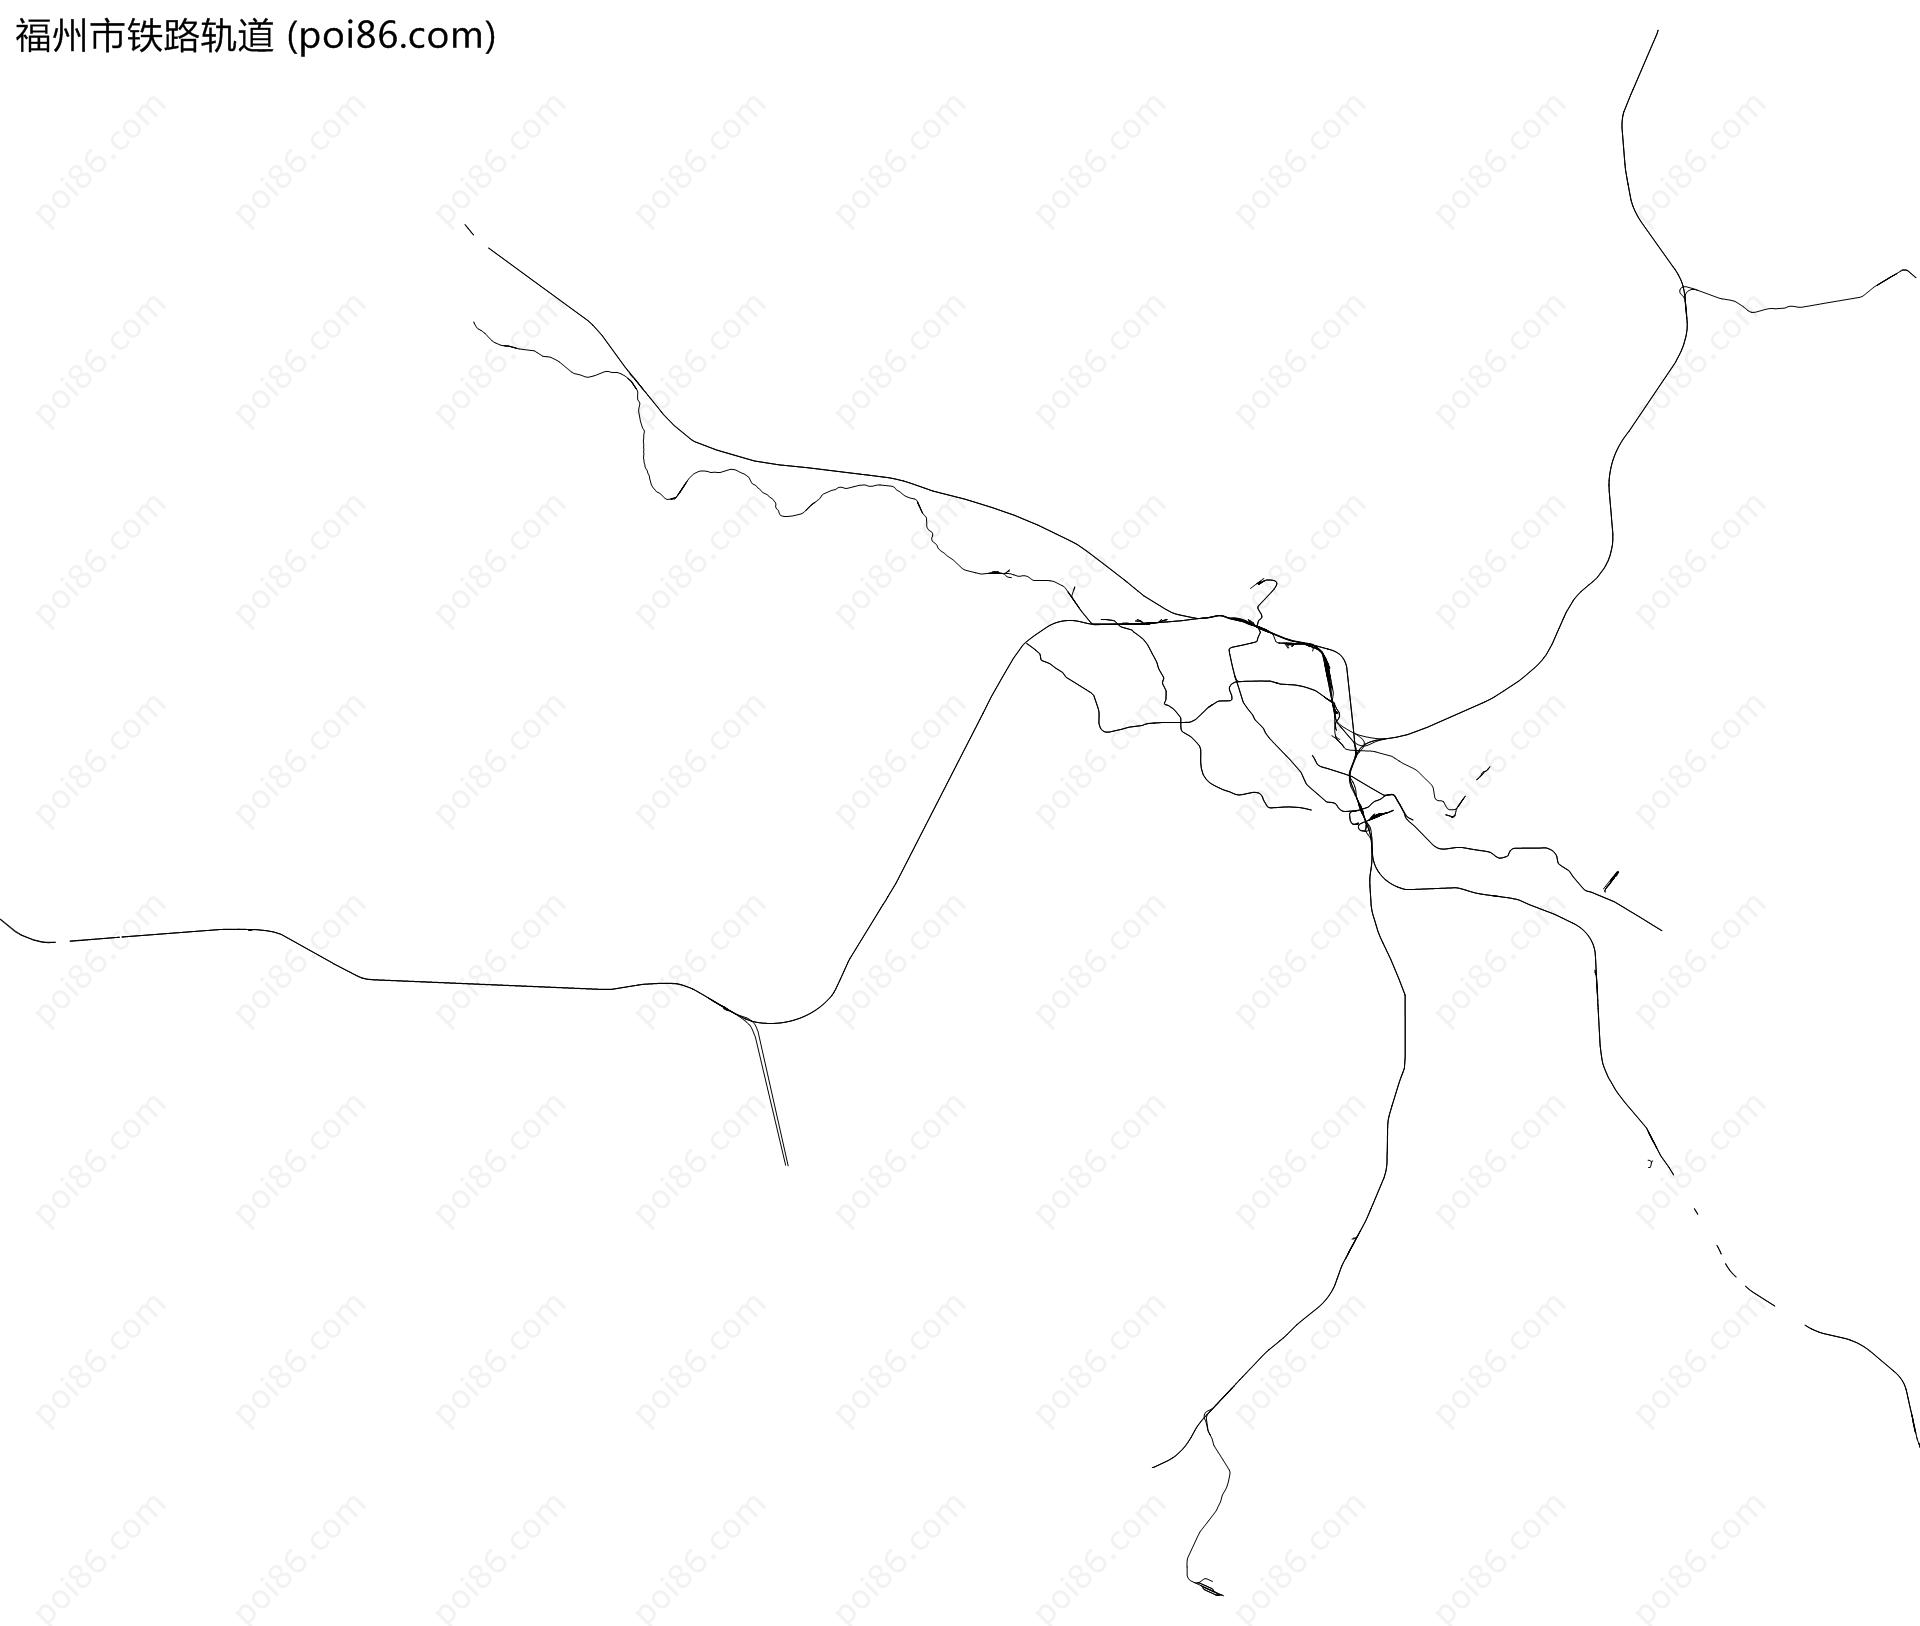 福州市铁路轨道地图